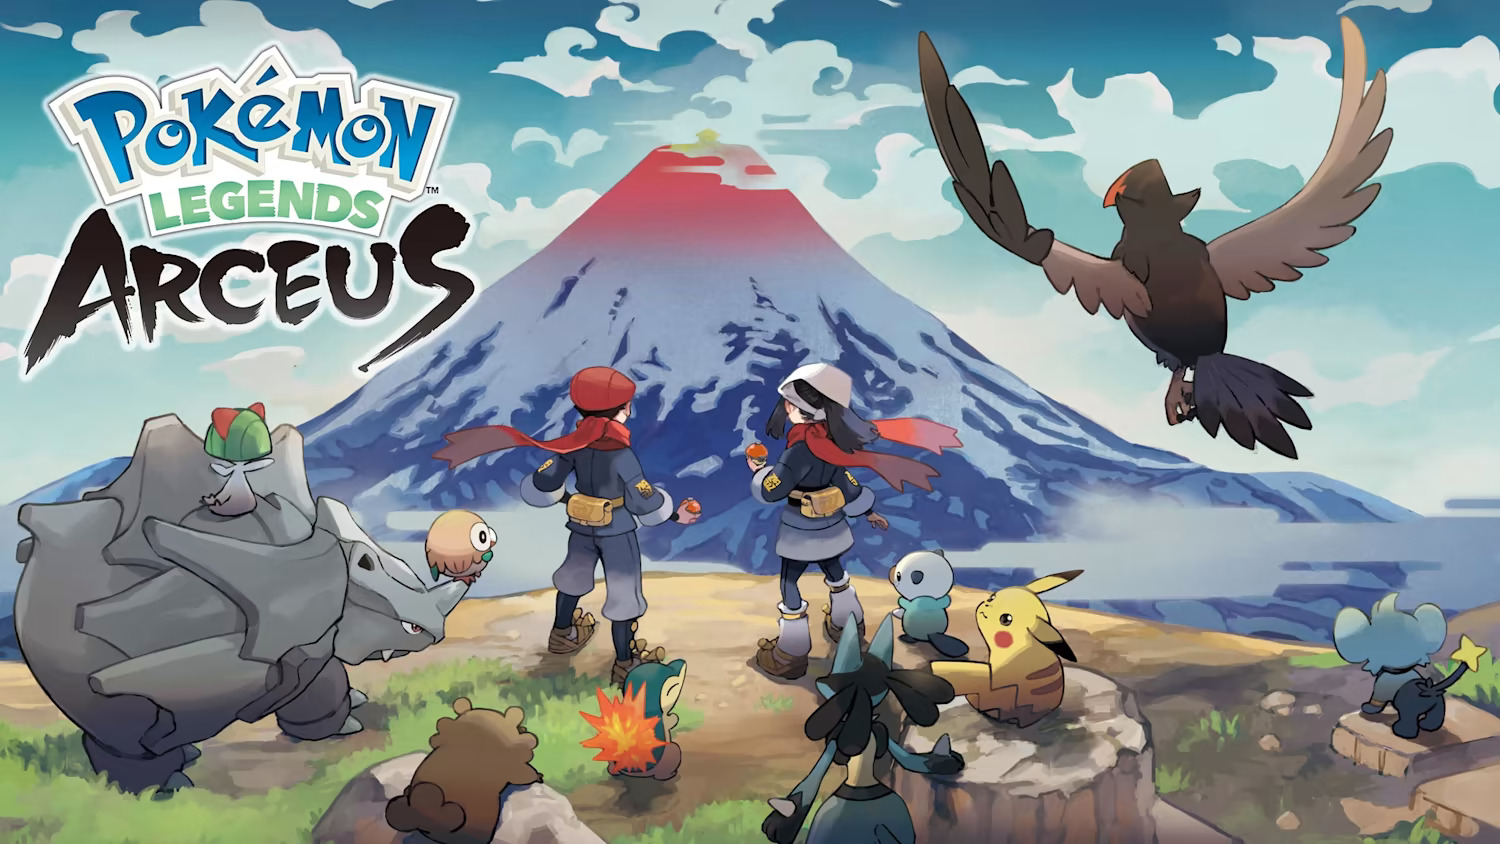 Pokémon Legends: Arceus - Nintendo Switch sales 7-13 March 2022